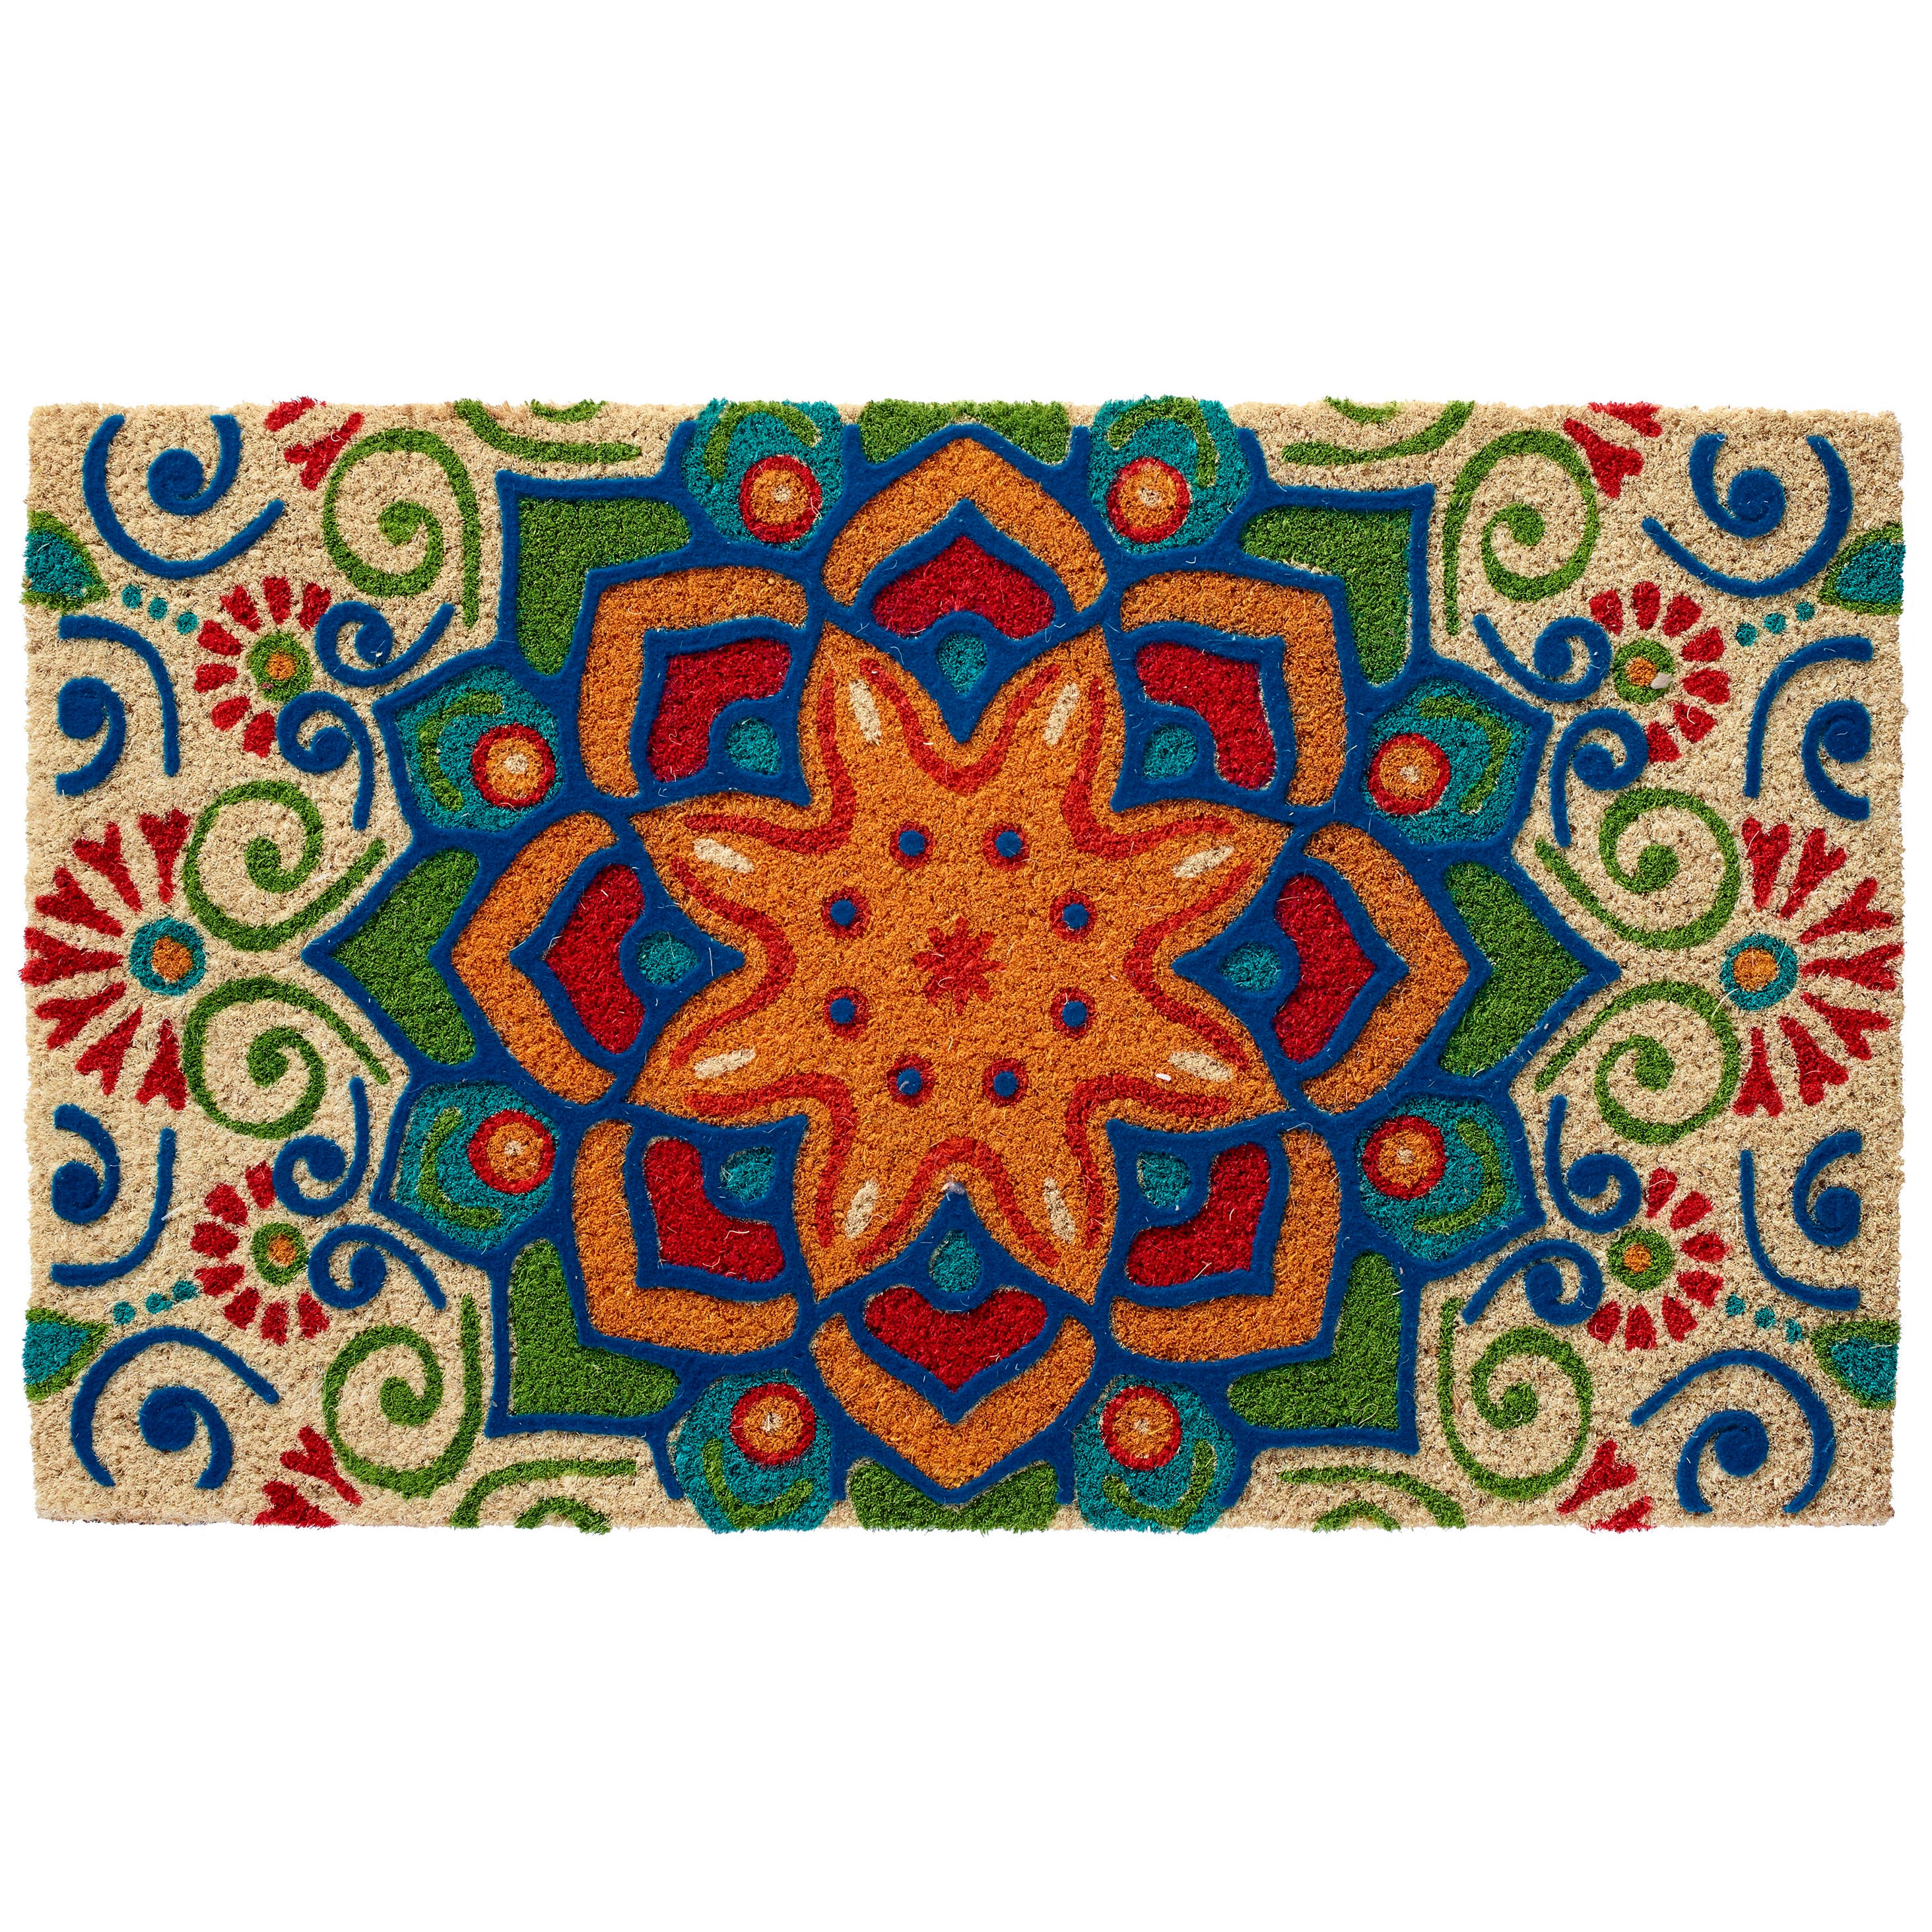 Star of India Doormat